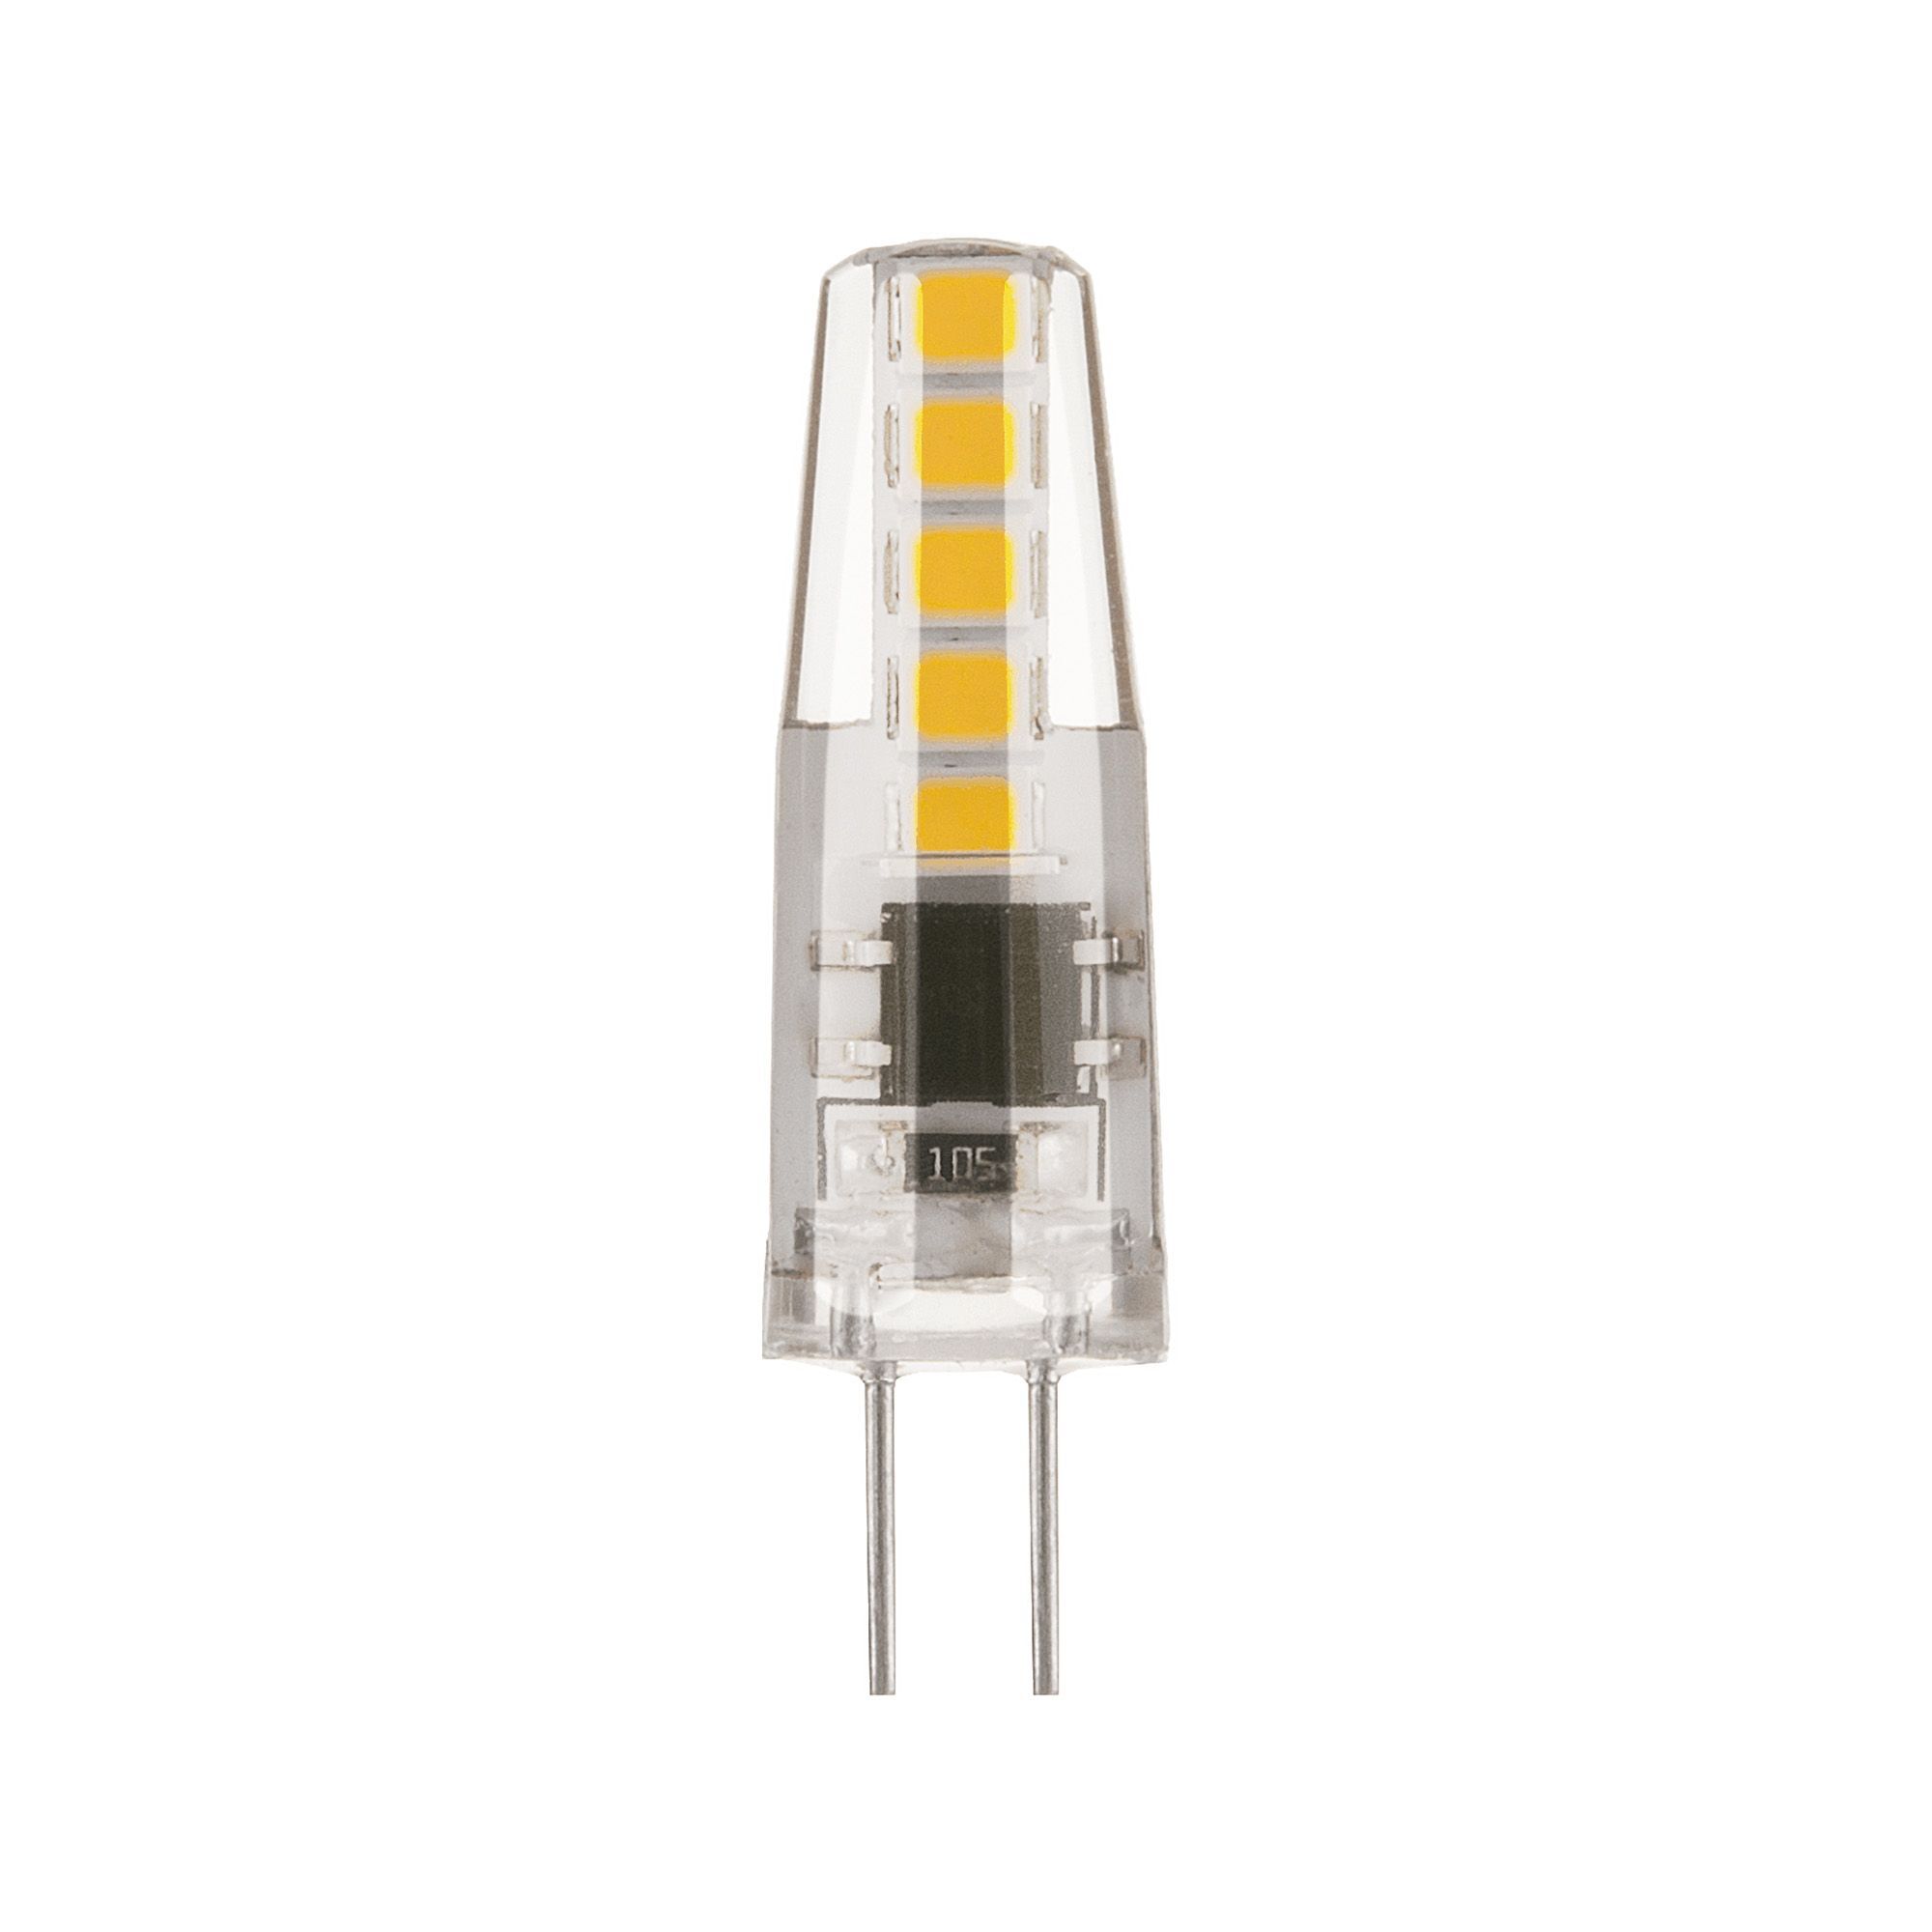 Лампа светодиодная Elektrostandard G4 JC 3 Вт 4200К естественный свет 230 В капсула (BLG402) лампа светодиодная elektrostandard g4 jcd 5 вт 4200к естественный свет 220 в капсула blg420